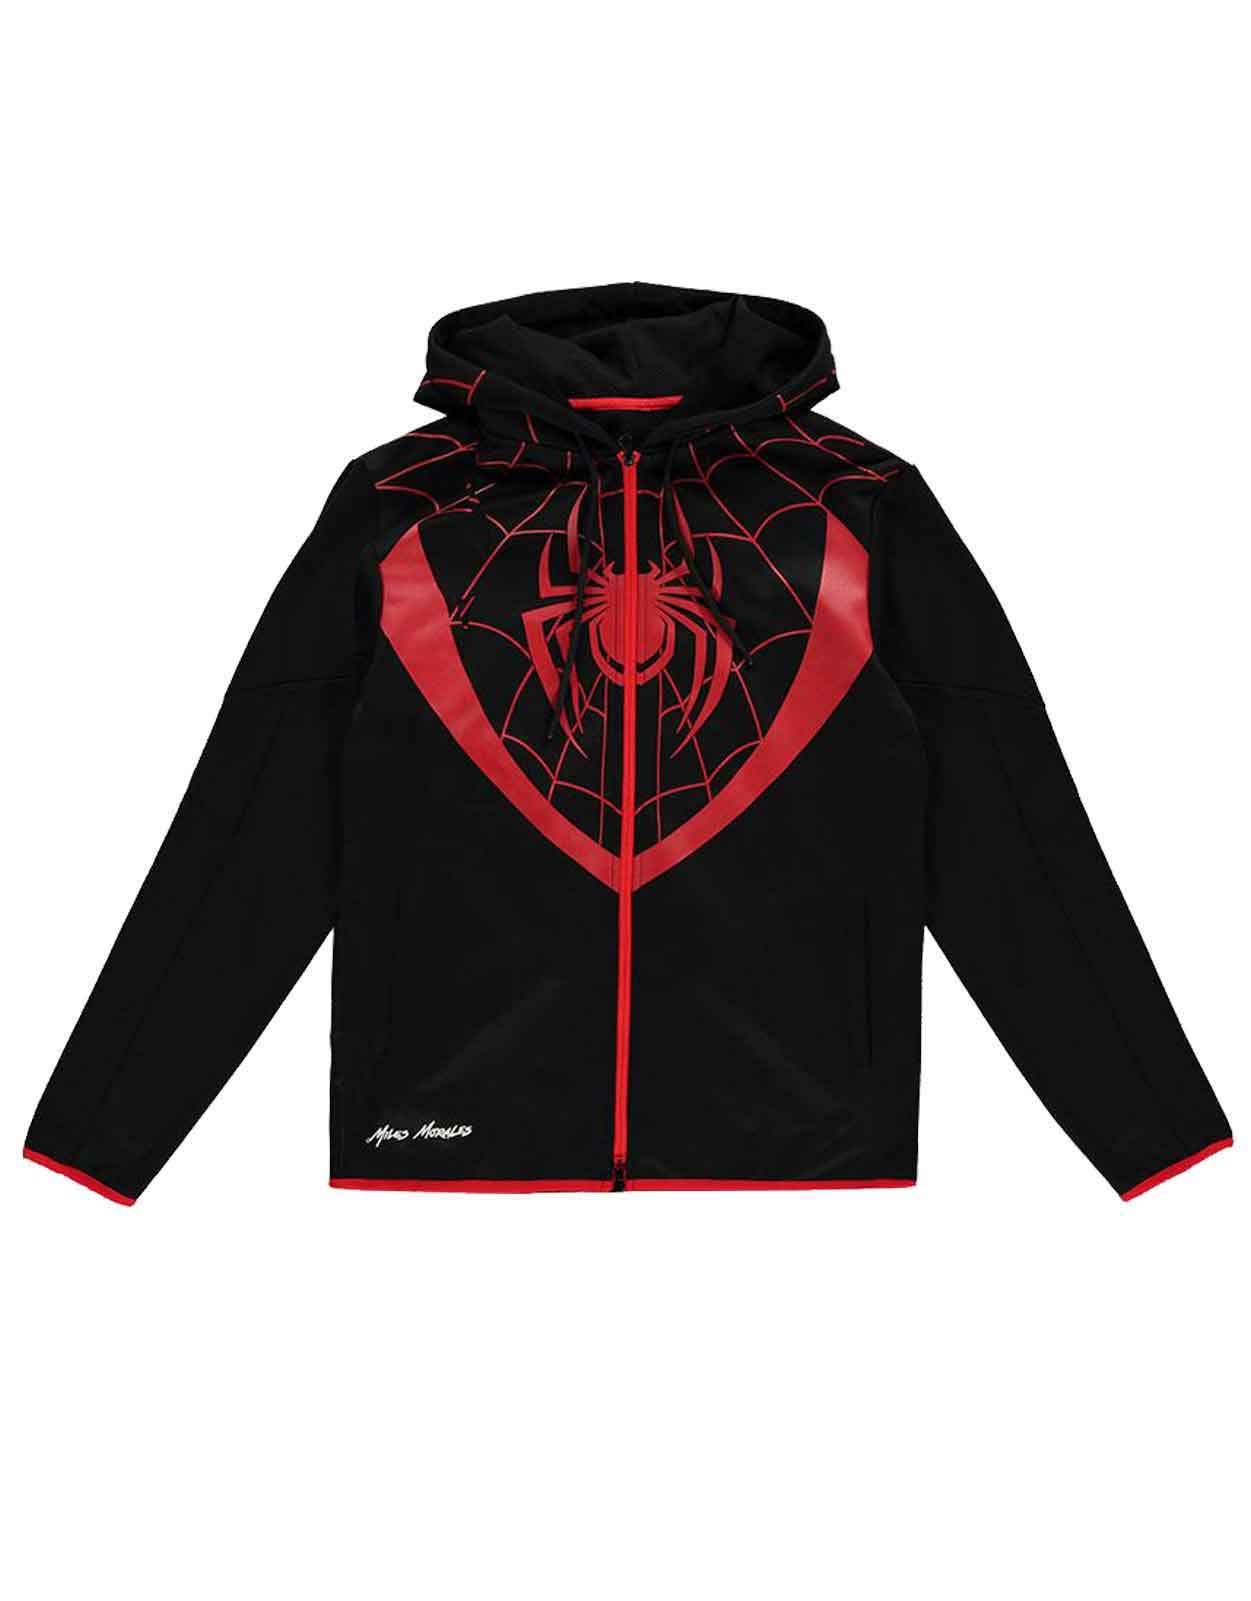 Abbigliamento Marvel: Spider Man - Miles Morales - Black (Felpa Con Cappuccio Unisex Tg. XL) NUOVO SIGILLATO, EDIZIONE DEL 10/07/2020 SUBITO DISPONIBILE